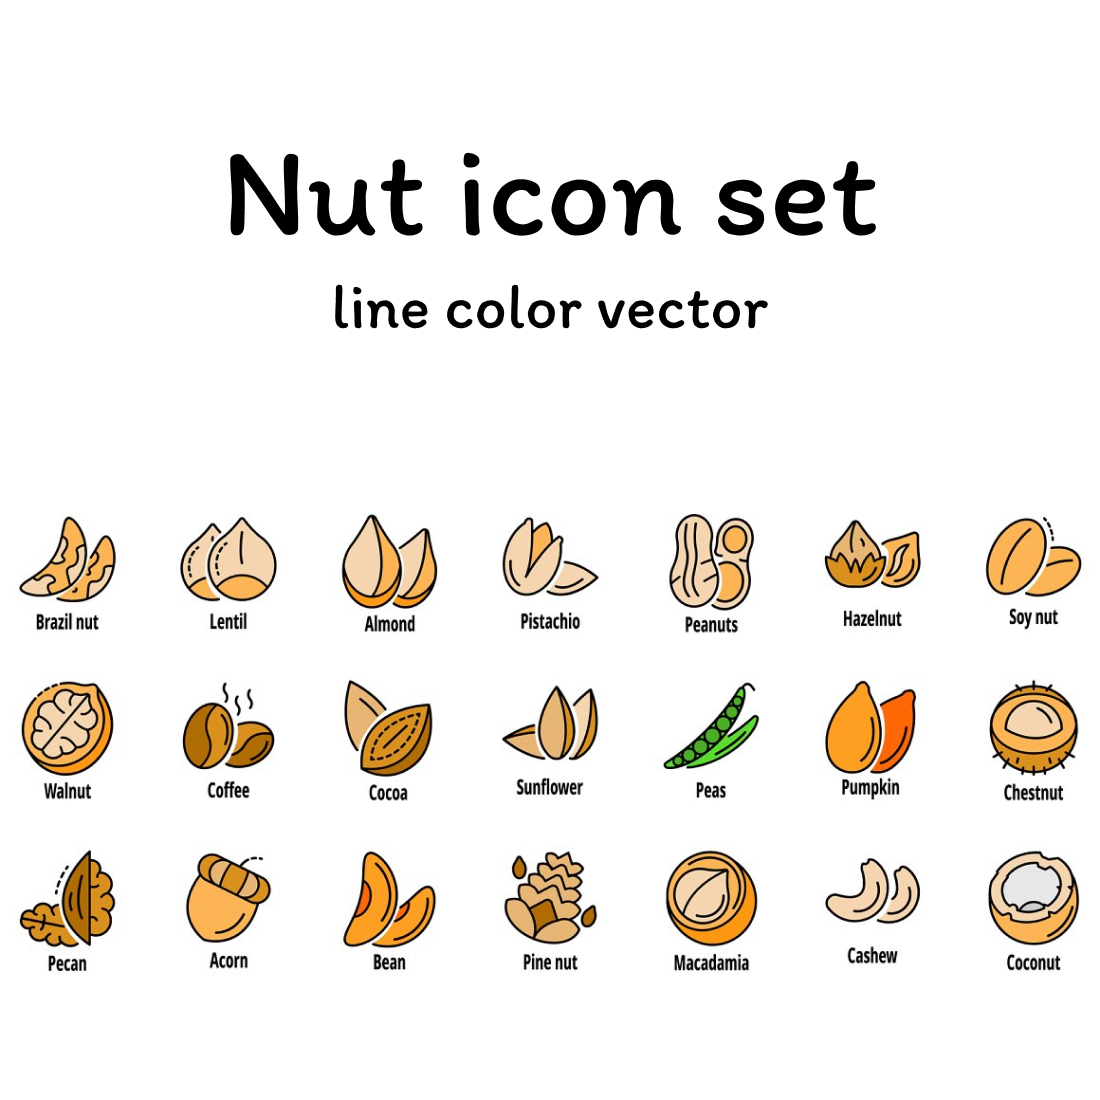 Nut icon set line color vector.